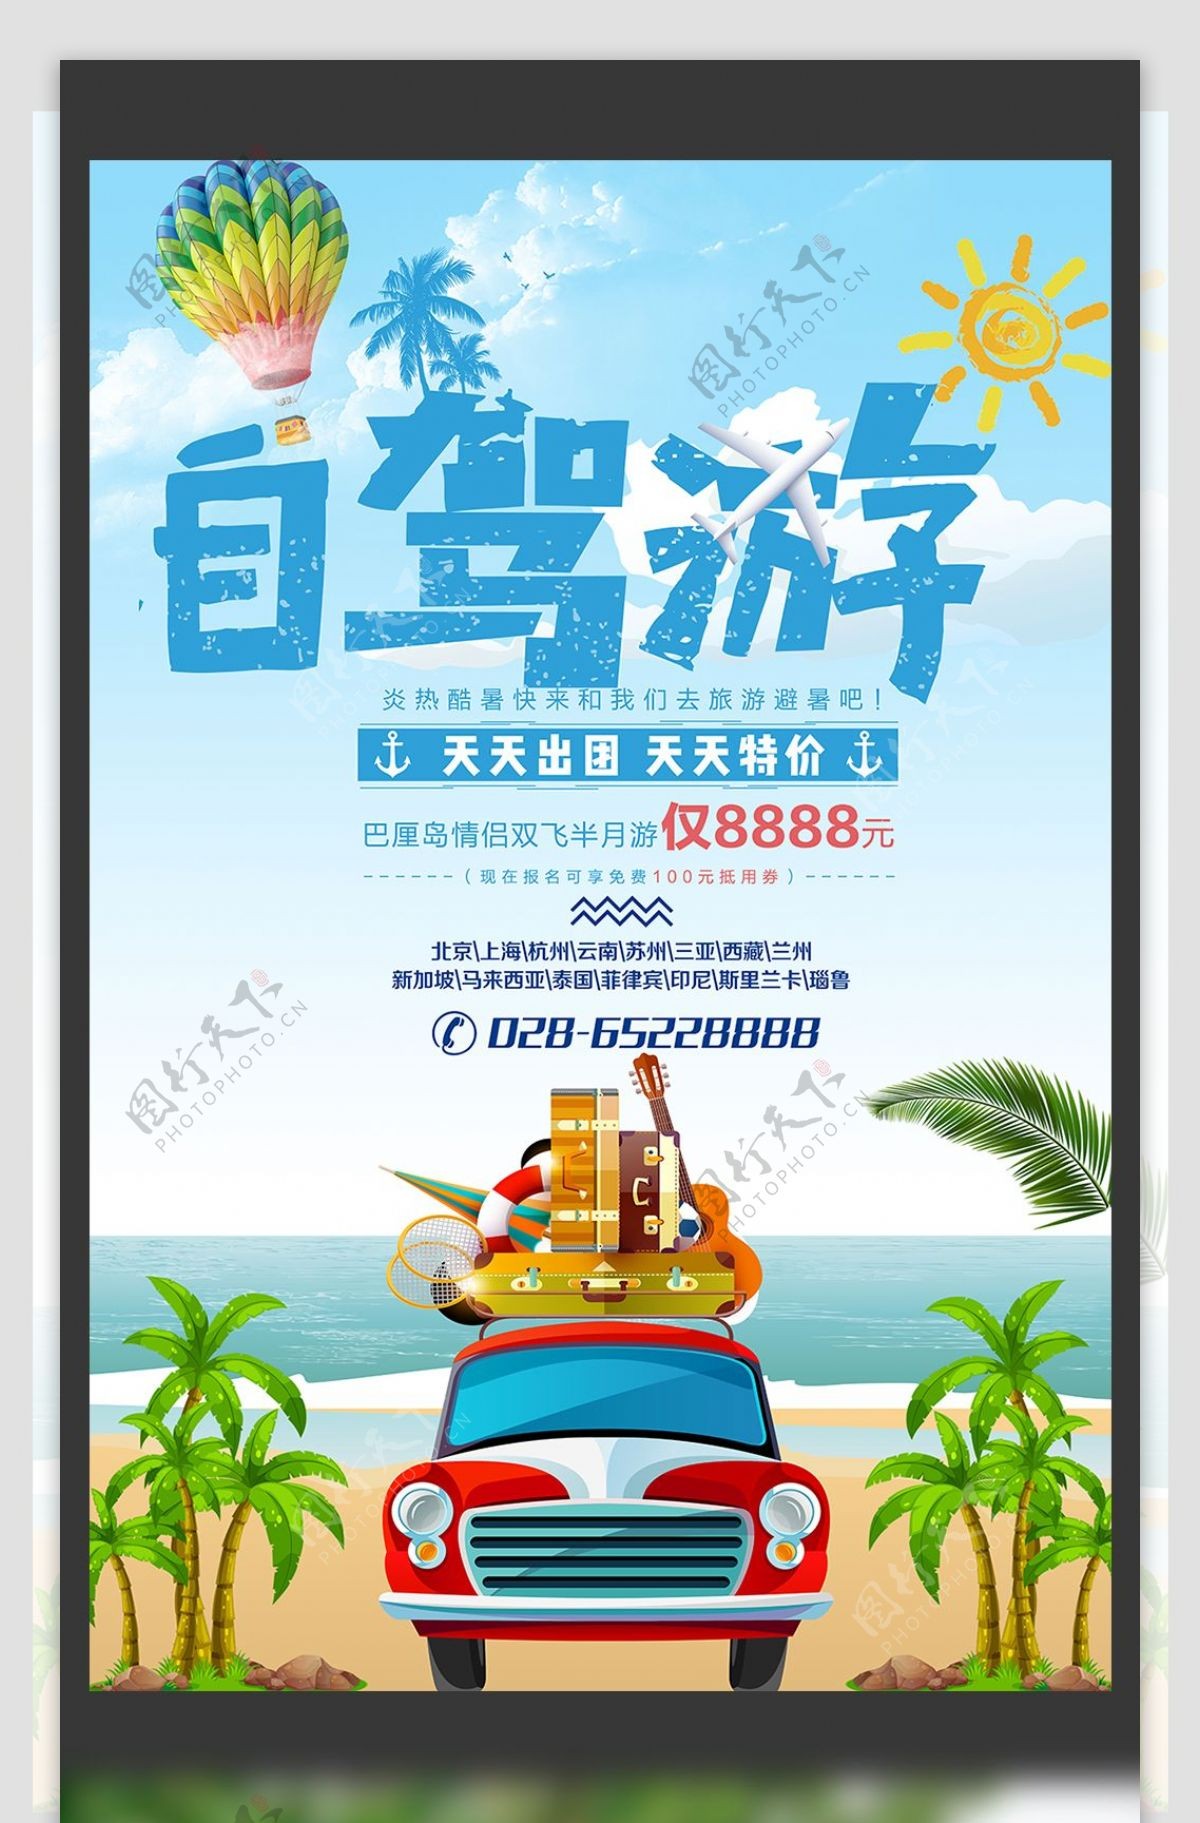 小清新自驾游旅行社旅游宣传海报